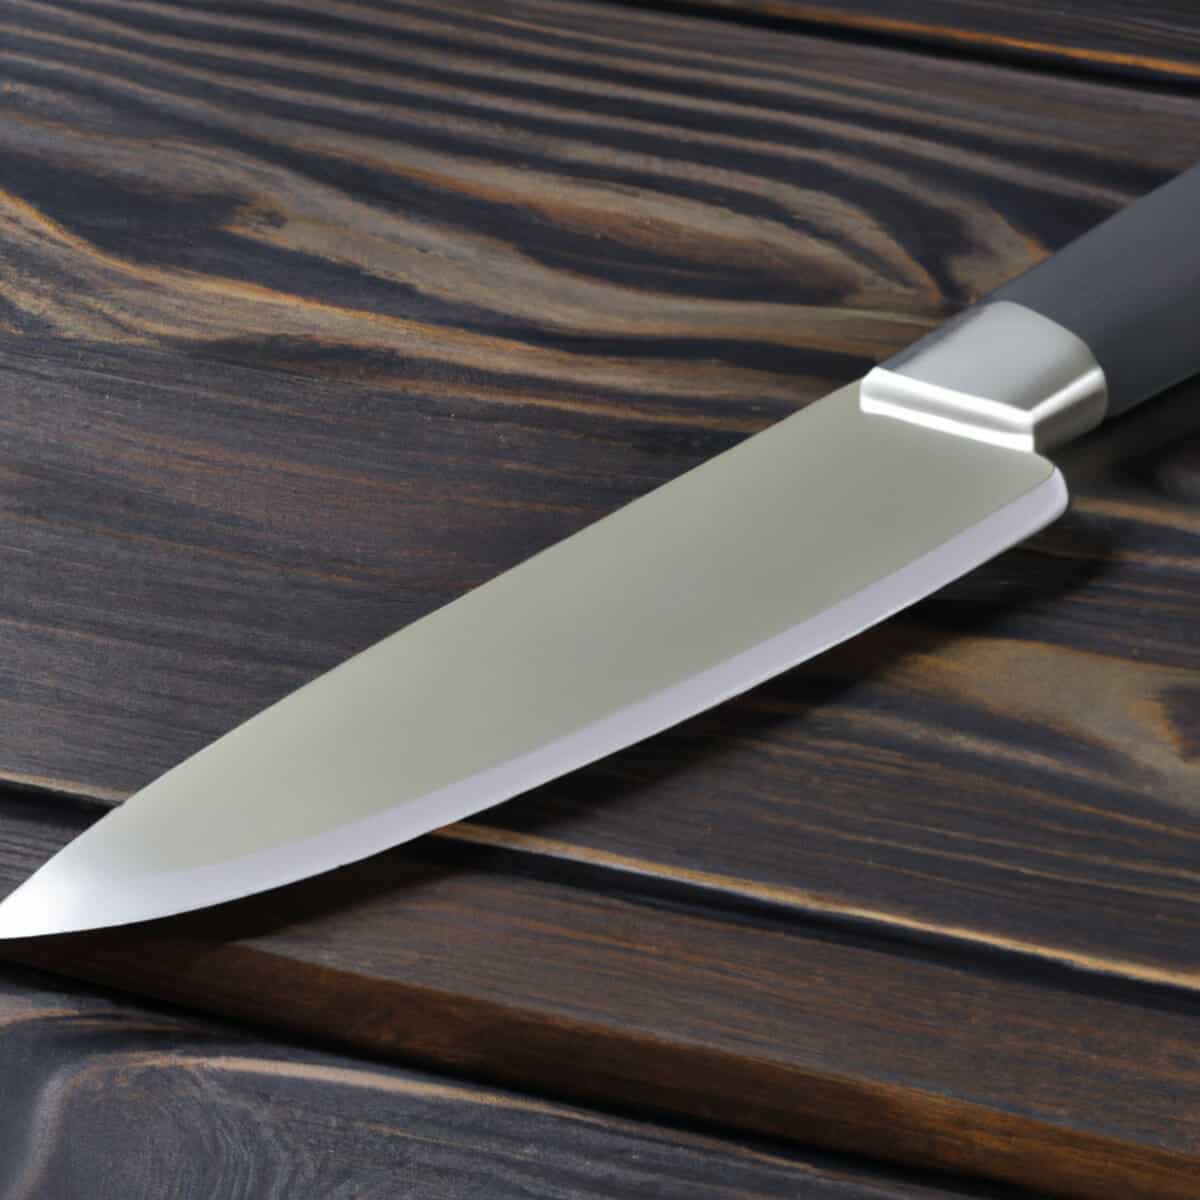 Kyomen- Japanese Mirror Polished Knife Finish Explained